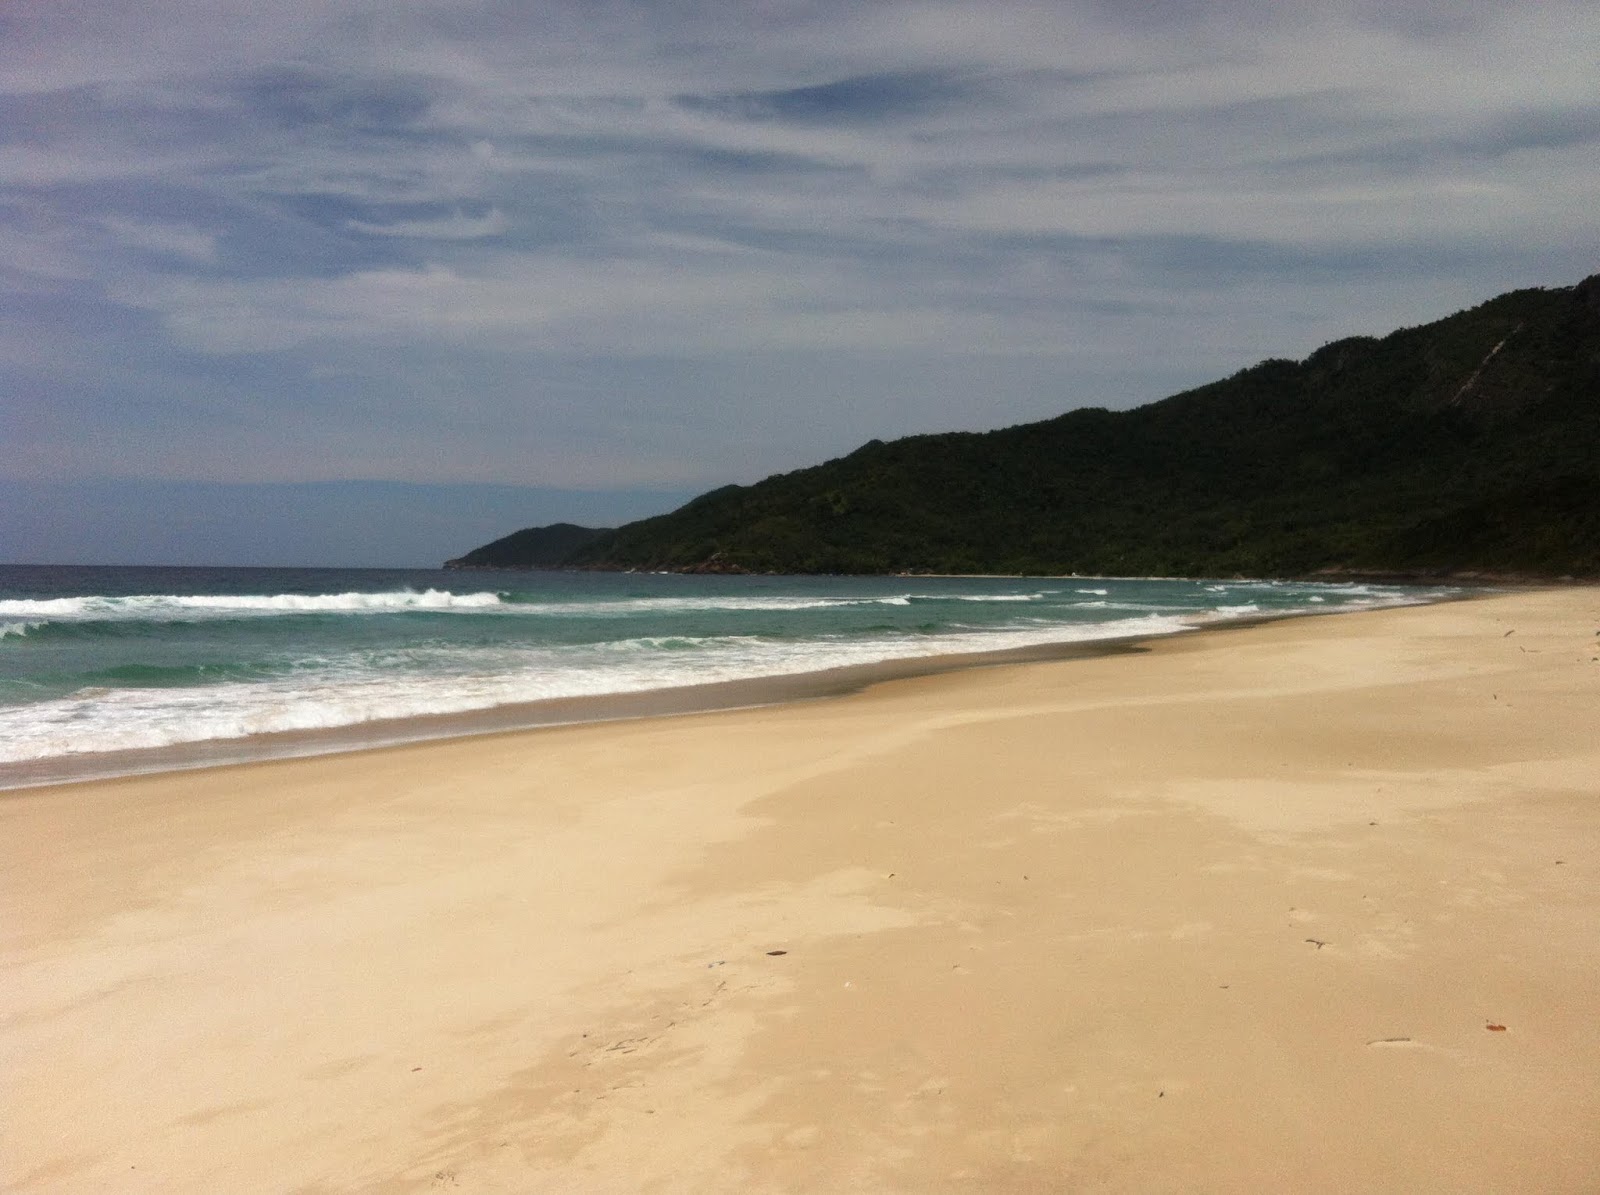 Foto von Praia do Sul mit langer gerader strand